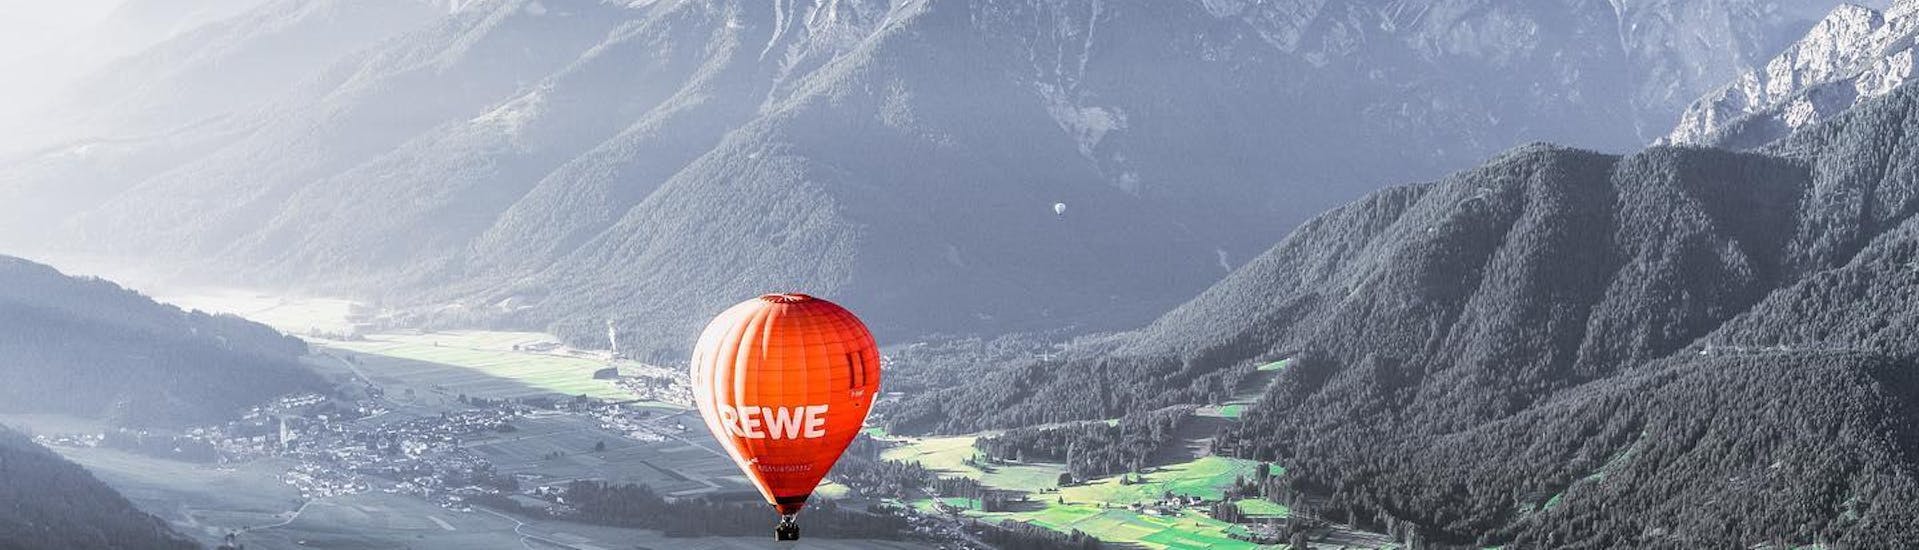 Gande vista panoramica della Val Pusteria che potrete ammirare durante il volo in mongolfiera sulla Val Pusteria in Alto Adige con Mountain Ballooning Bruneck.